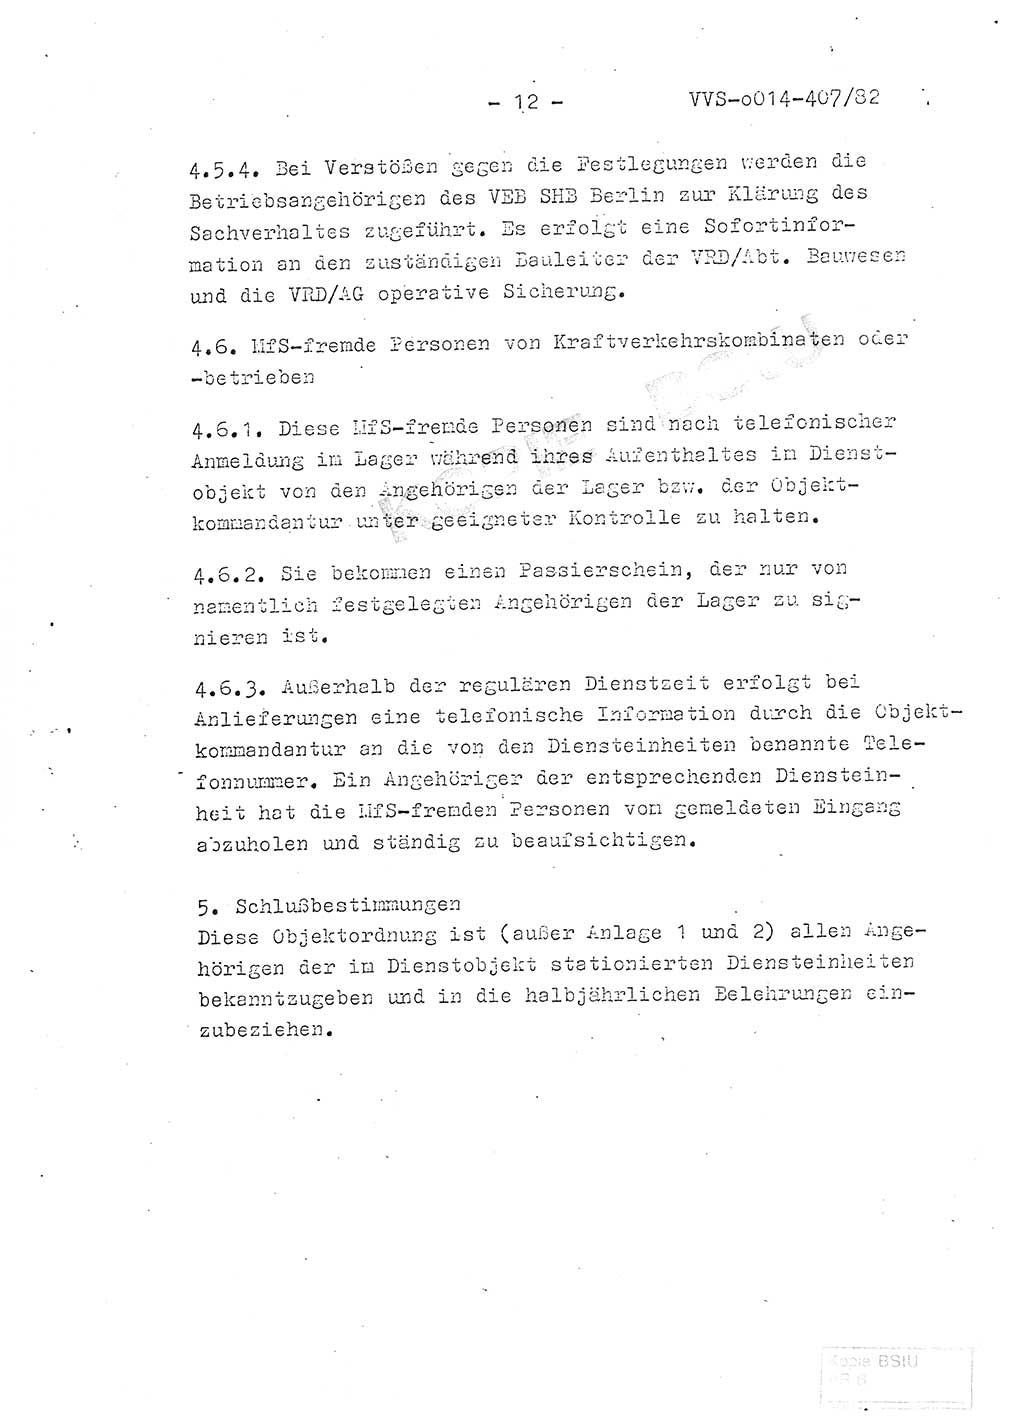 Ordnung Nr. 1/82 zur Gewährleistung von Sicherheit und Ordnung für das Objekt Berlin-Hohenschönhausen, Freienwalder Straße - Objektordnung -, Ministerium für Staatssicherheit (MfS) [Deutsche Demokratische Republik (DDR)], Hauptabteilung (HA) Ⅸ, Leiter, Verantwortlicher für das Dienstobjekt (DO) Berlin-Hohenschönhausen, Freienwalder Straße, Vertrauliche Verschlußsache (VVS) o014-407/82, Berlin 1982, Seite 12 (Obj.-Ordn. 1/82 DO Bln.-HsH. MfS DDR HA Ⅸ Ltr. VVS o014-407/82 1982, S. 12)